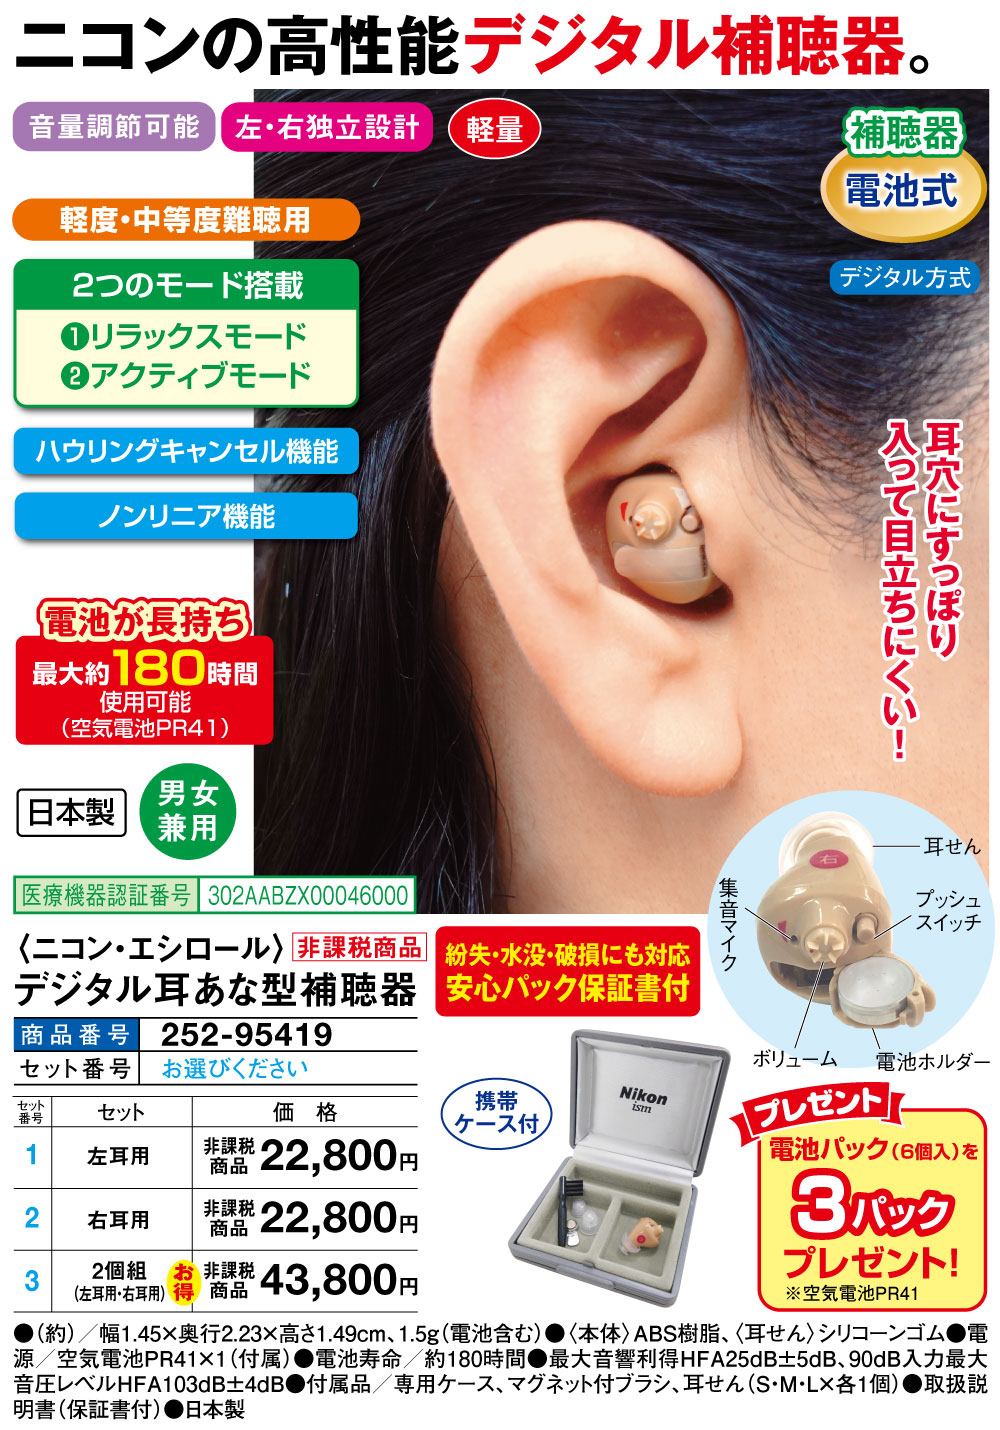 ニコン・エシロール デジタル耳あな型補聴器(左耳用): 生活雑貨・家電／はぴねすくらぶ